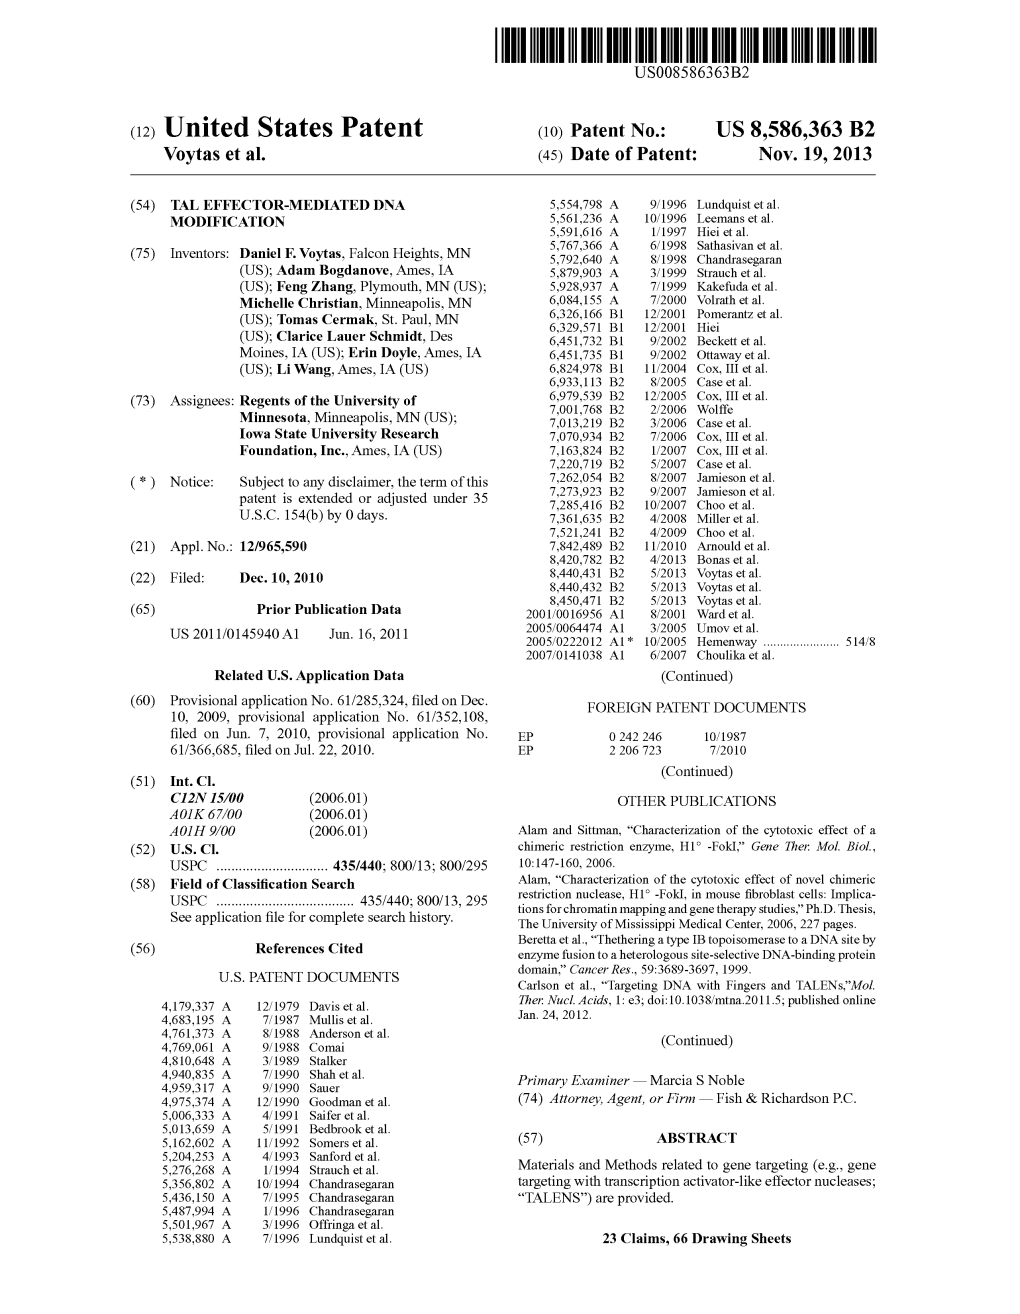 United States Patent (10) Patent No.: US 8,586,363 B2 Voytas Et Al